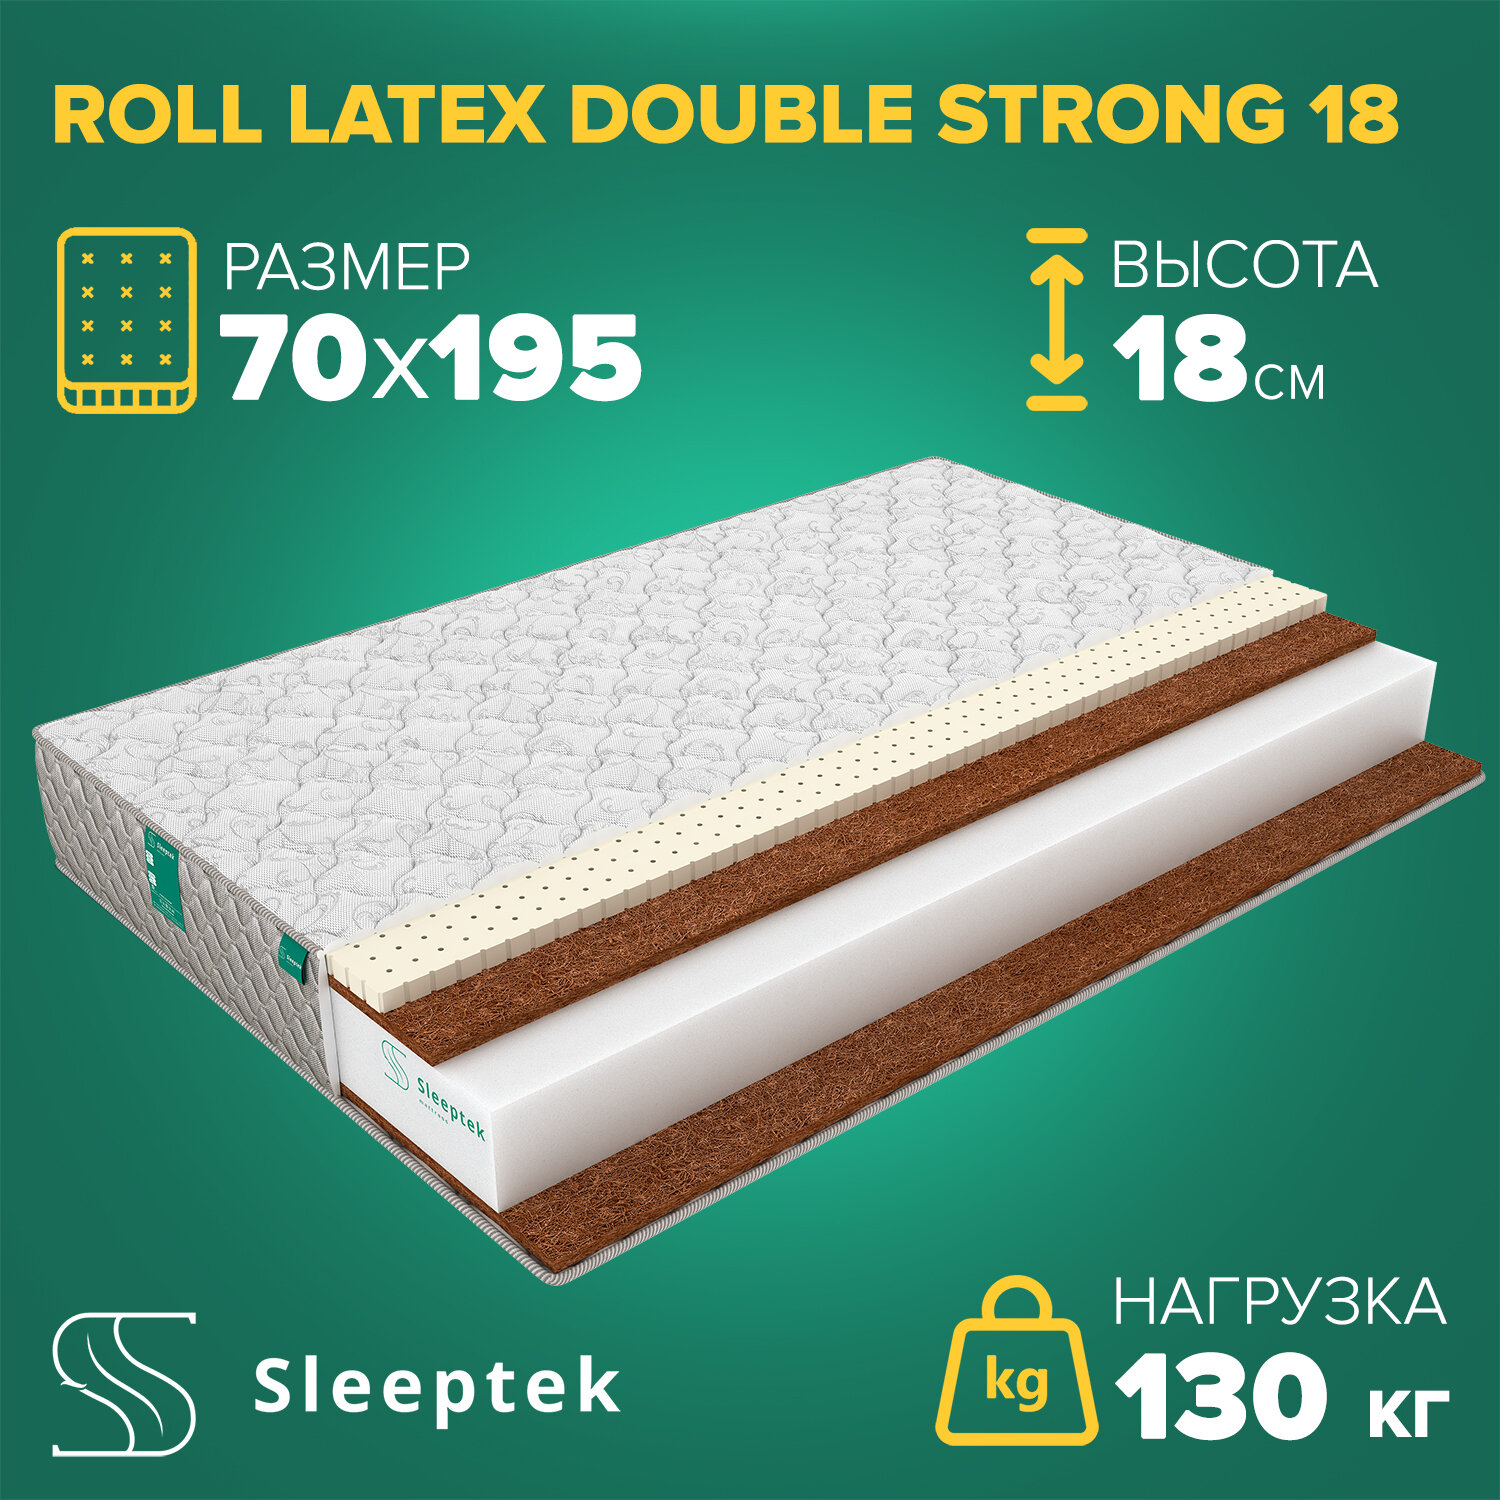 Матрас Sleeptek Roll Latex DoubleStrong 18 70х195